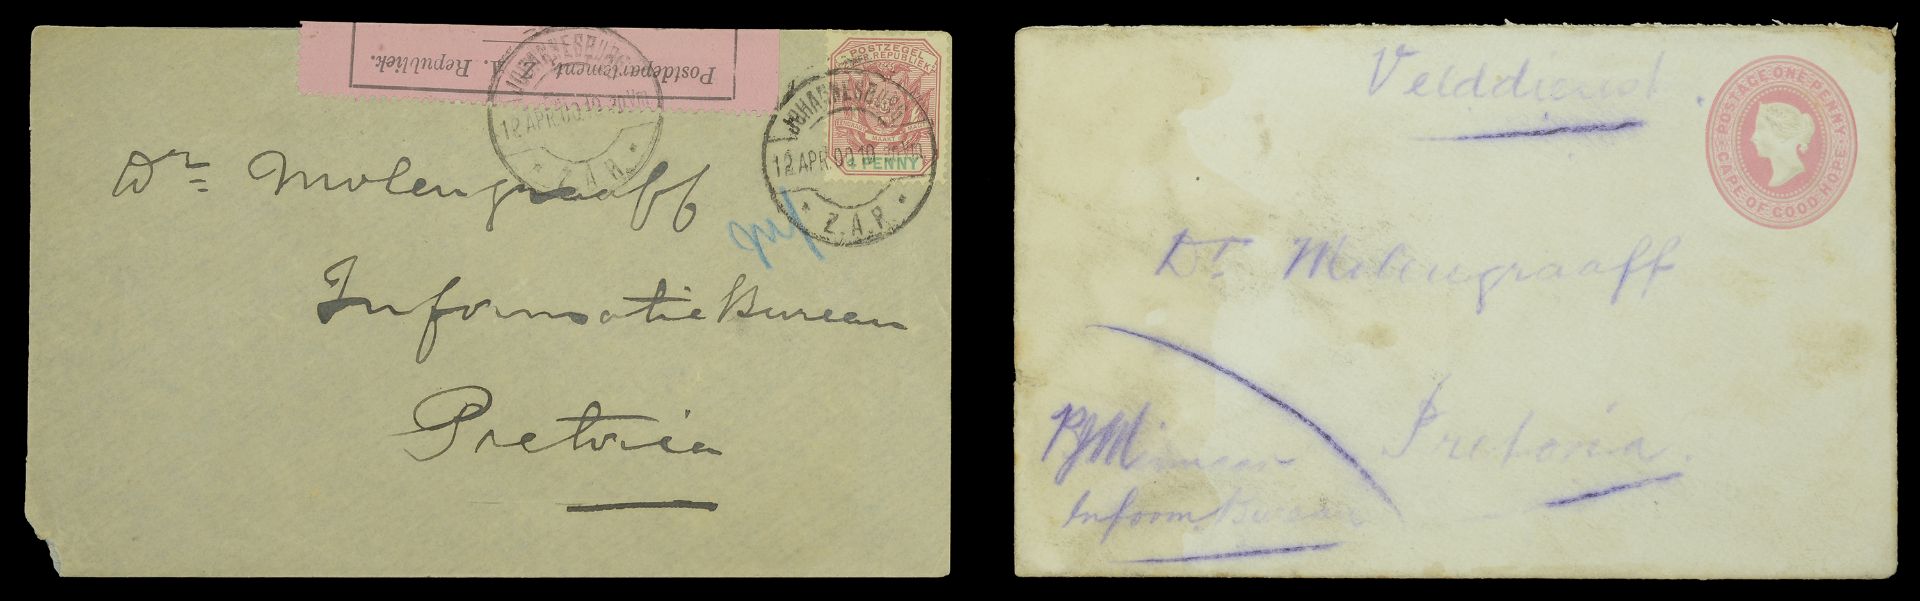 Boer War Postal Covers (2) both addressed to 'Dr. Molengraaf, Information Bureau, Pretoria',...